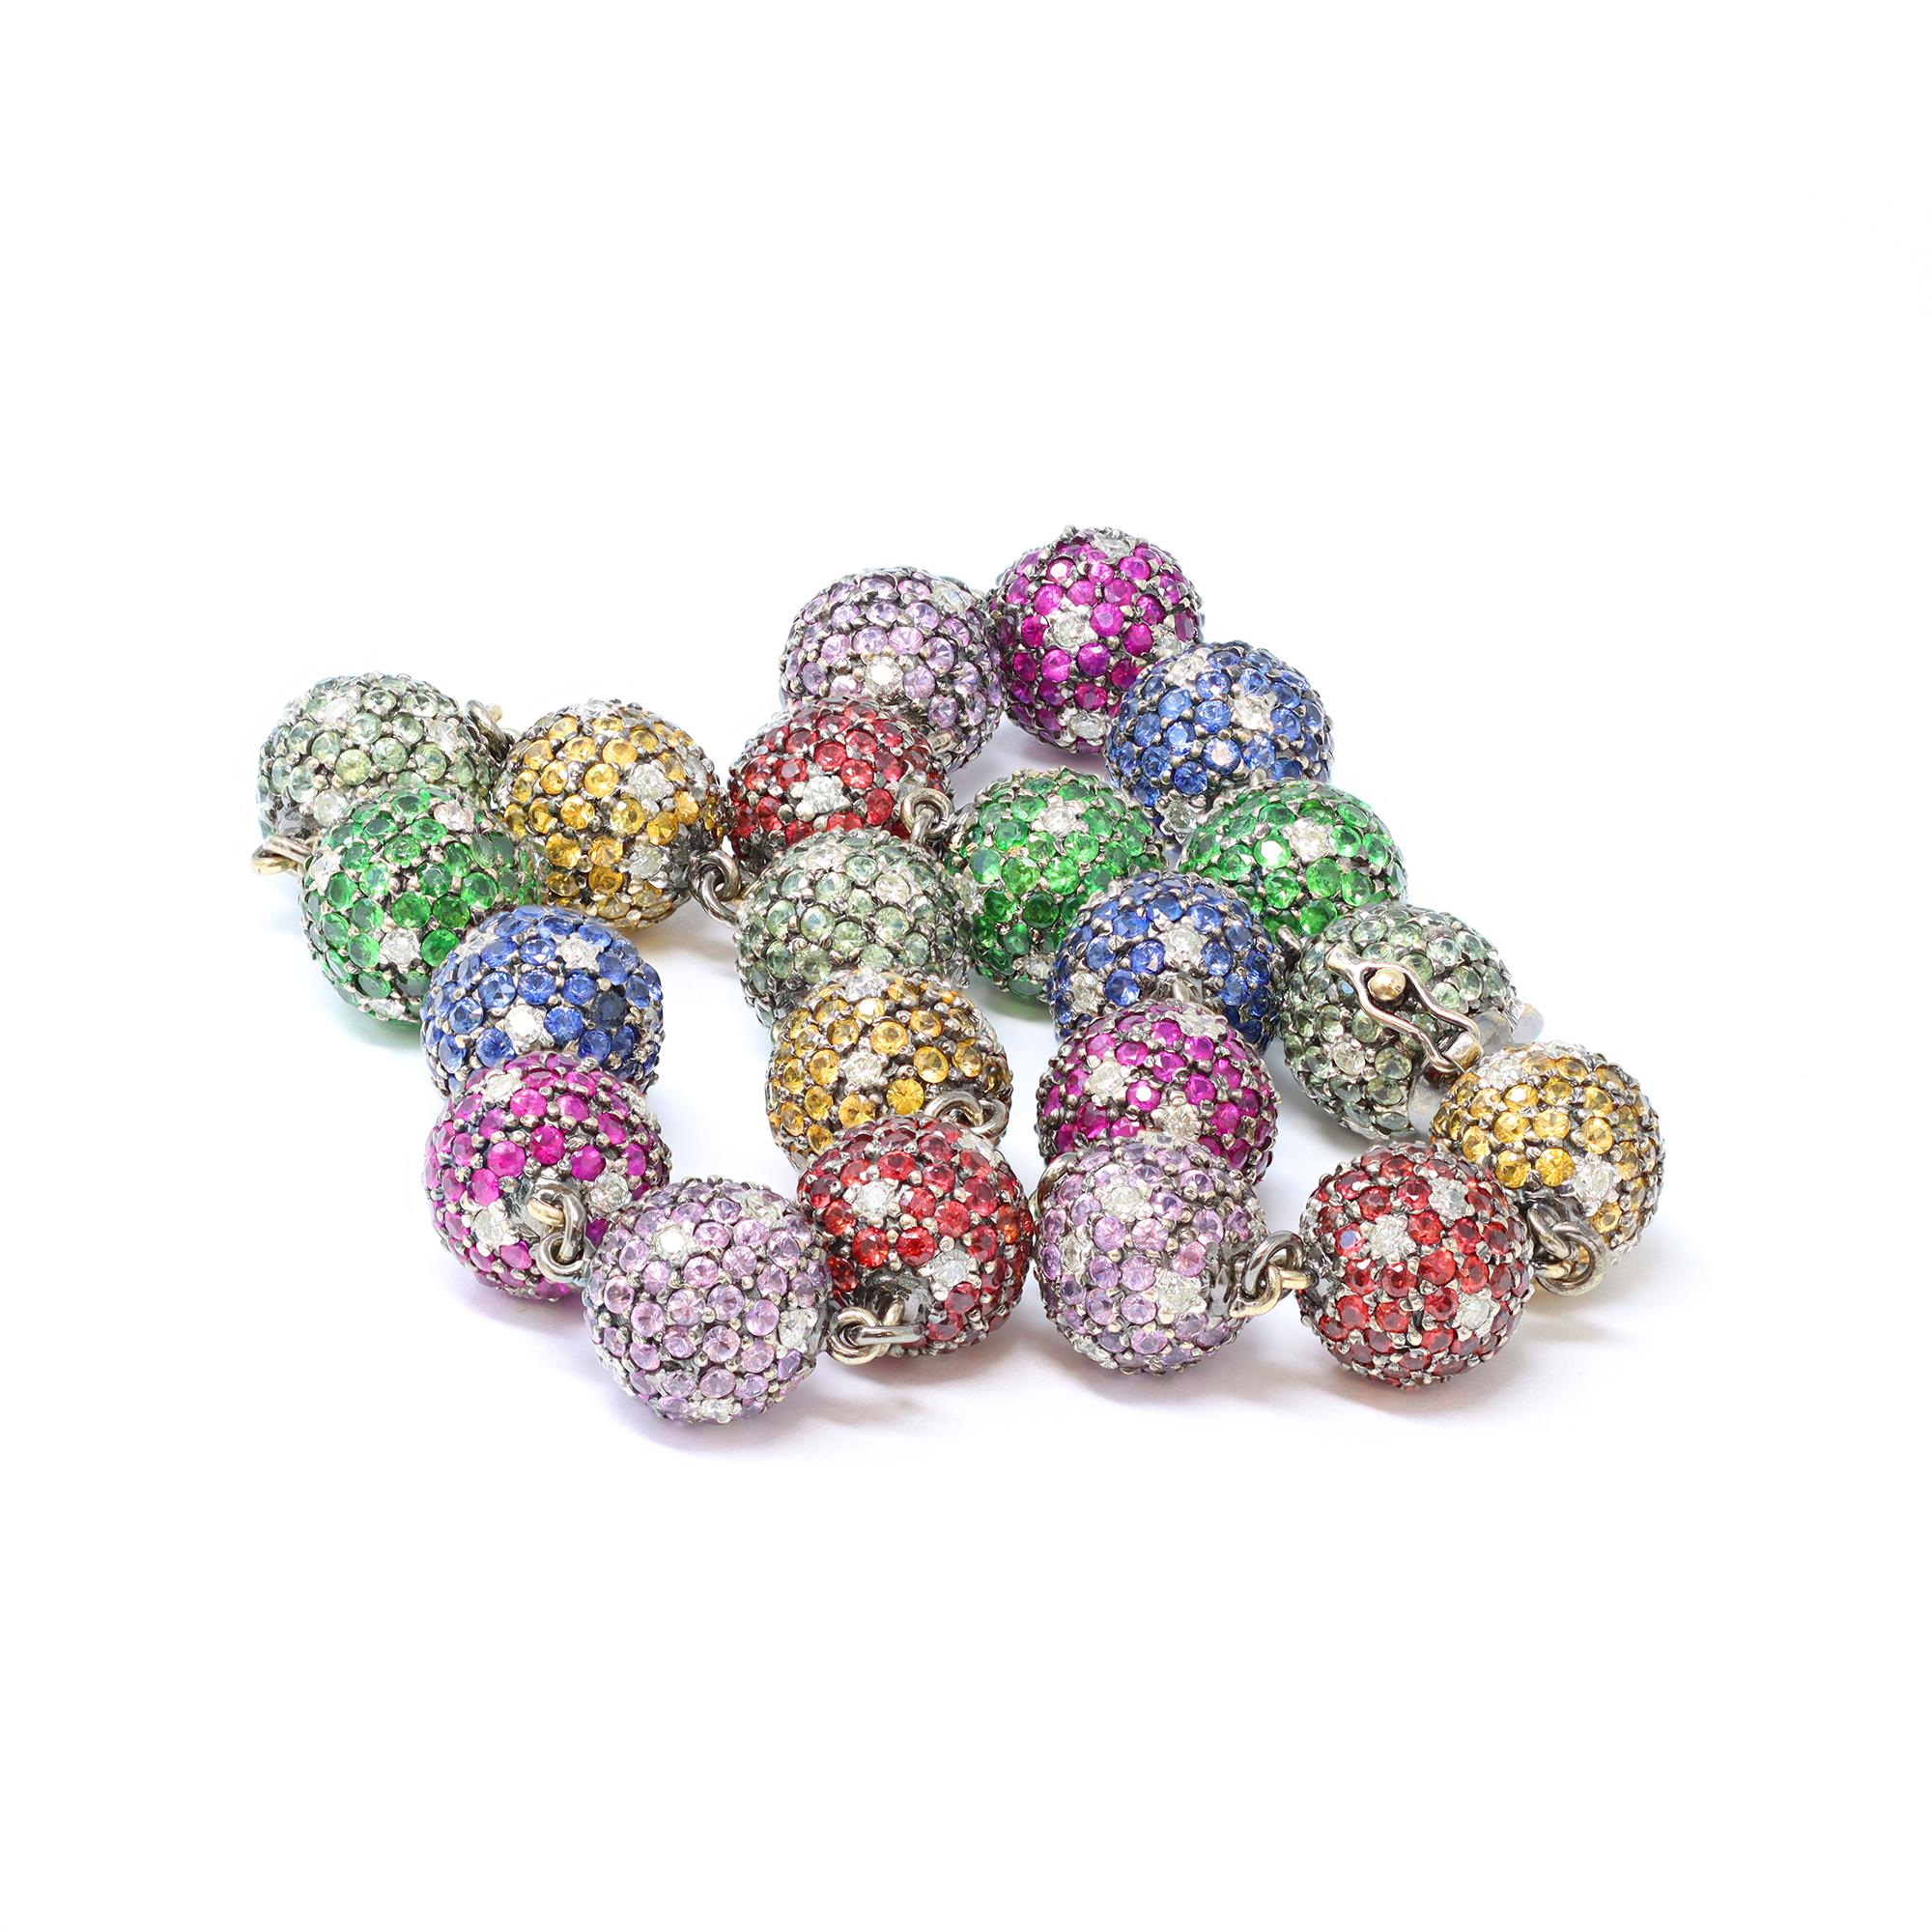 Un collier de perles unique et moderne composé de pierres précieuses multicolores serties en pavé et rehaussées de diamants. Le collier compte au total 21 boules, y compris le fermoir. Chaque boule est sertie de pierres naturelles : saphirs bleus,